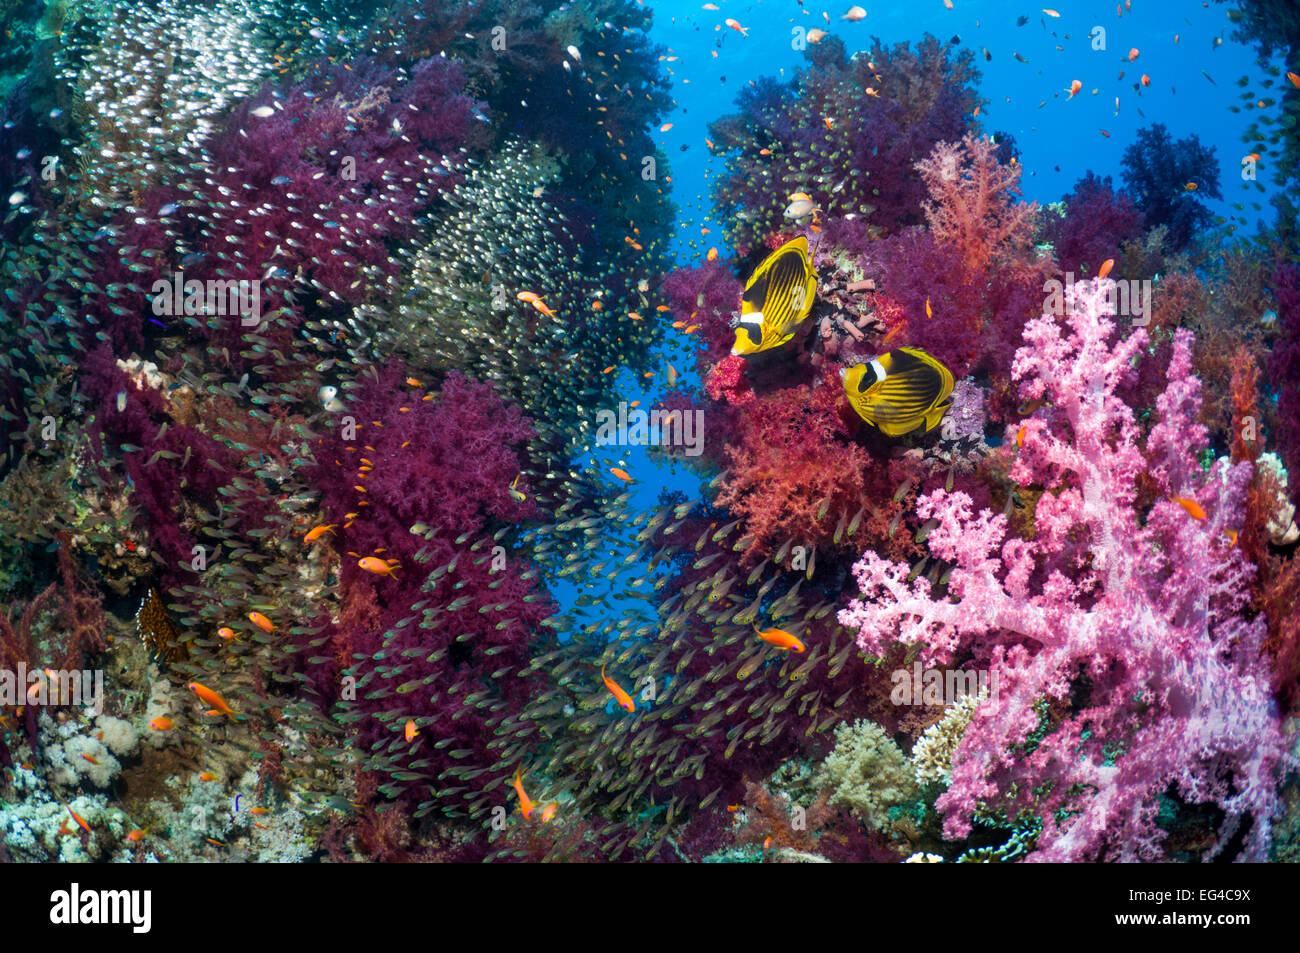 Coral reef scenario coppia Red Sea raccoon butterflyfish (Chaetodon fasciatus) spazzatrici pigmeo (Parapriacanthus guentheri) coralli molli (Dendronephthya sp) egitto mare rosso. Foto Stock